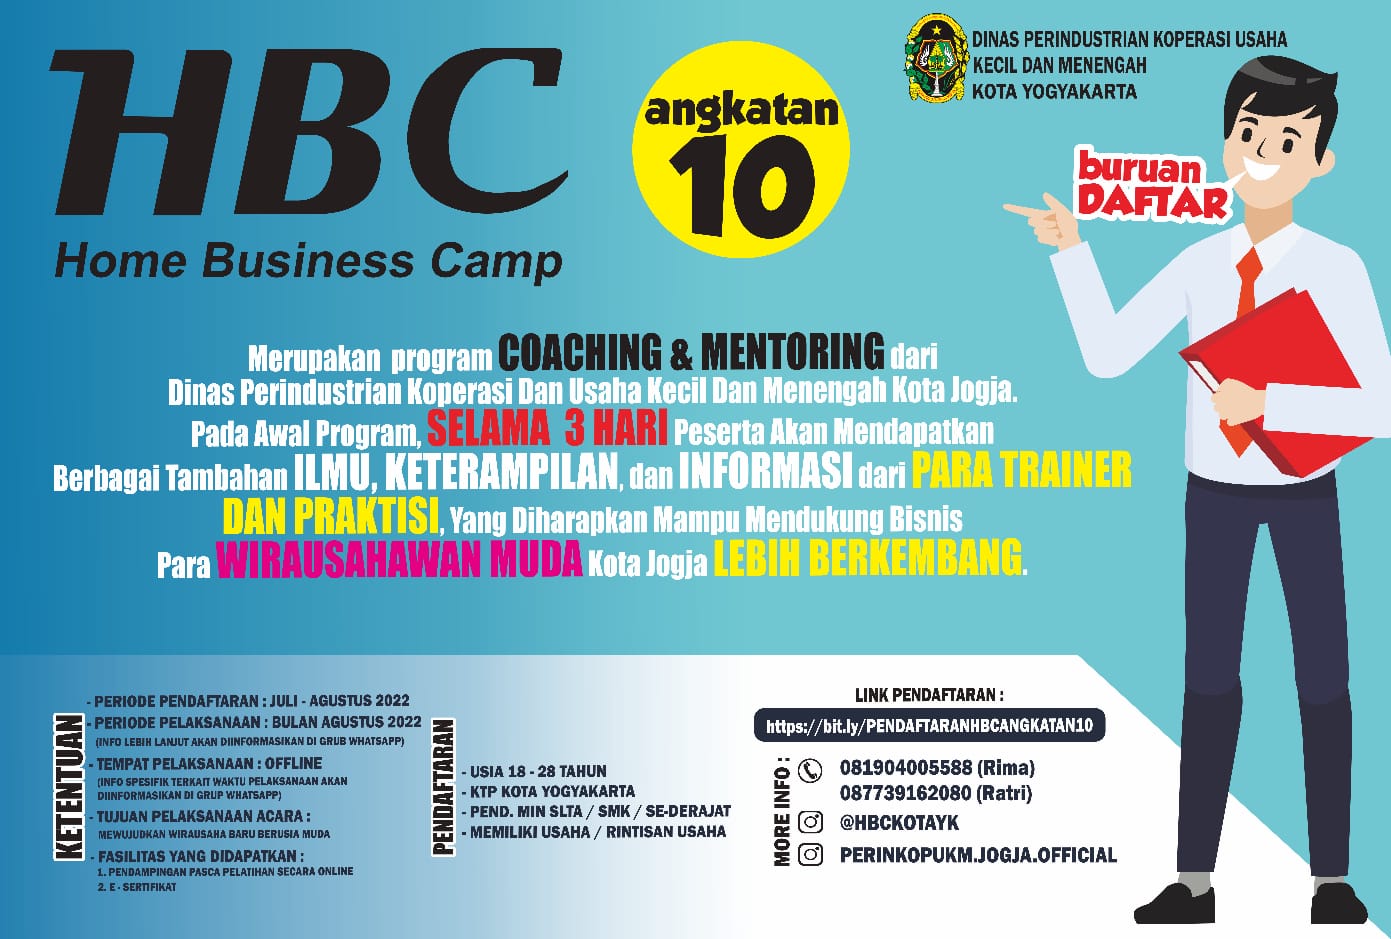 TELAH DIBUKA PENDAFTARAN HOME BUSINESS CAMP (HBC) ANGKATAN 10